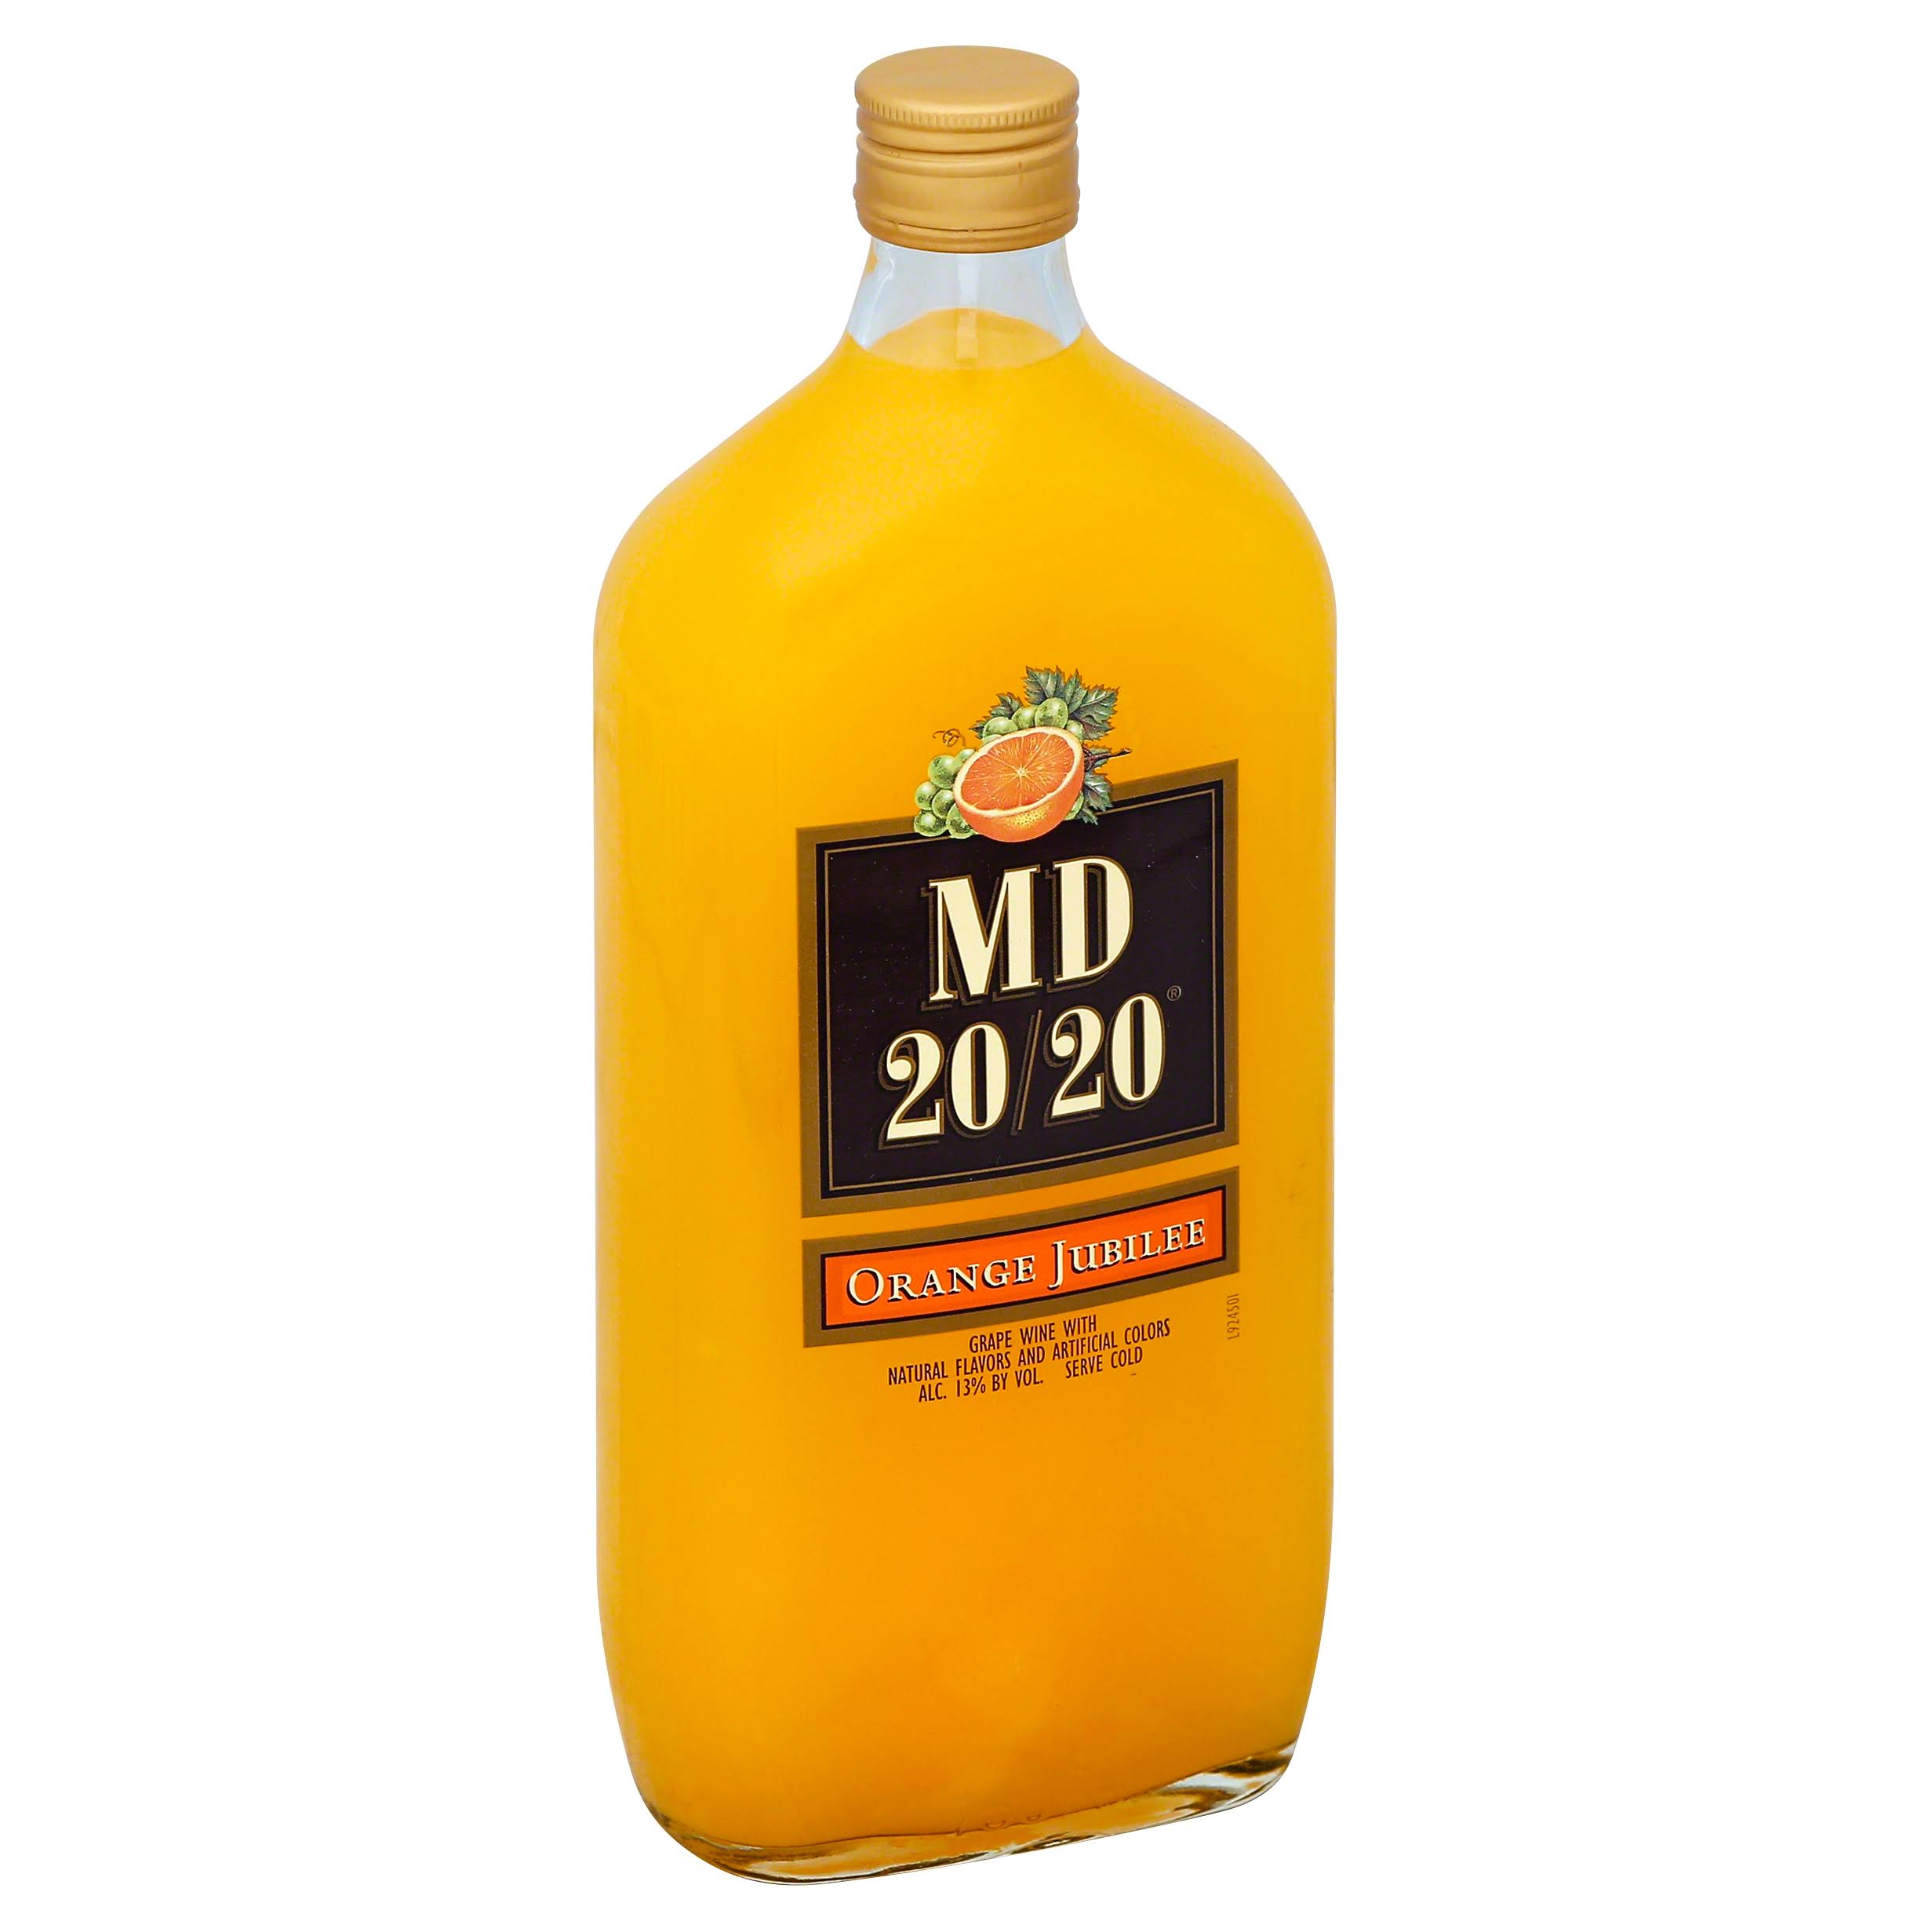 MD 2020 Orange Jubilee - 750 ml